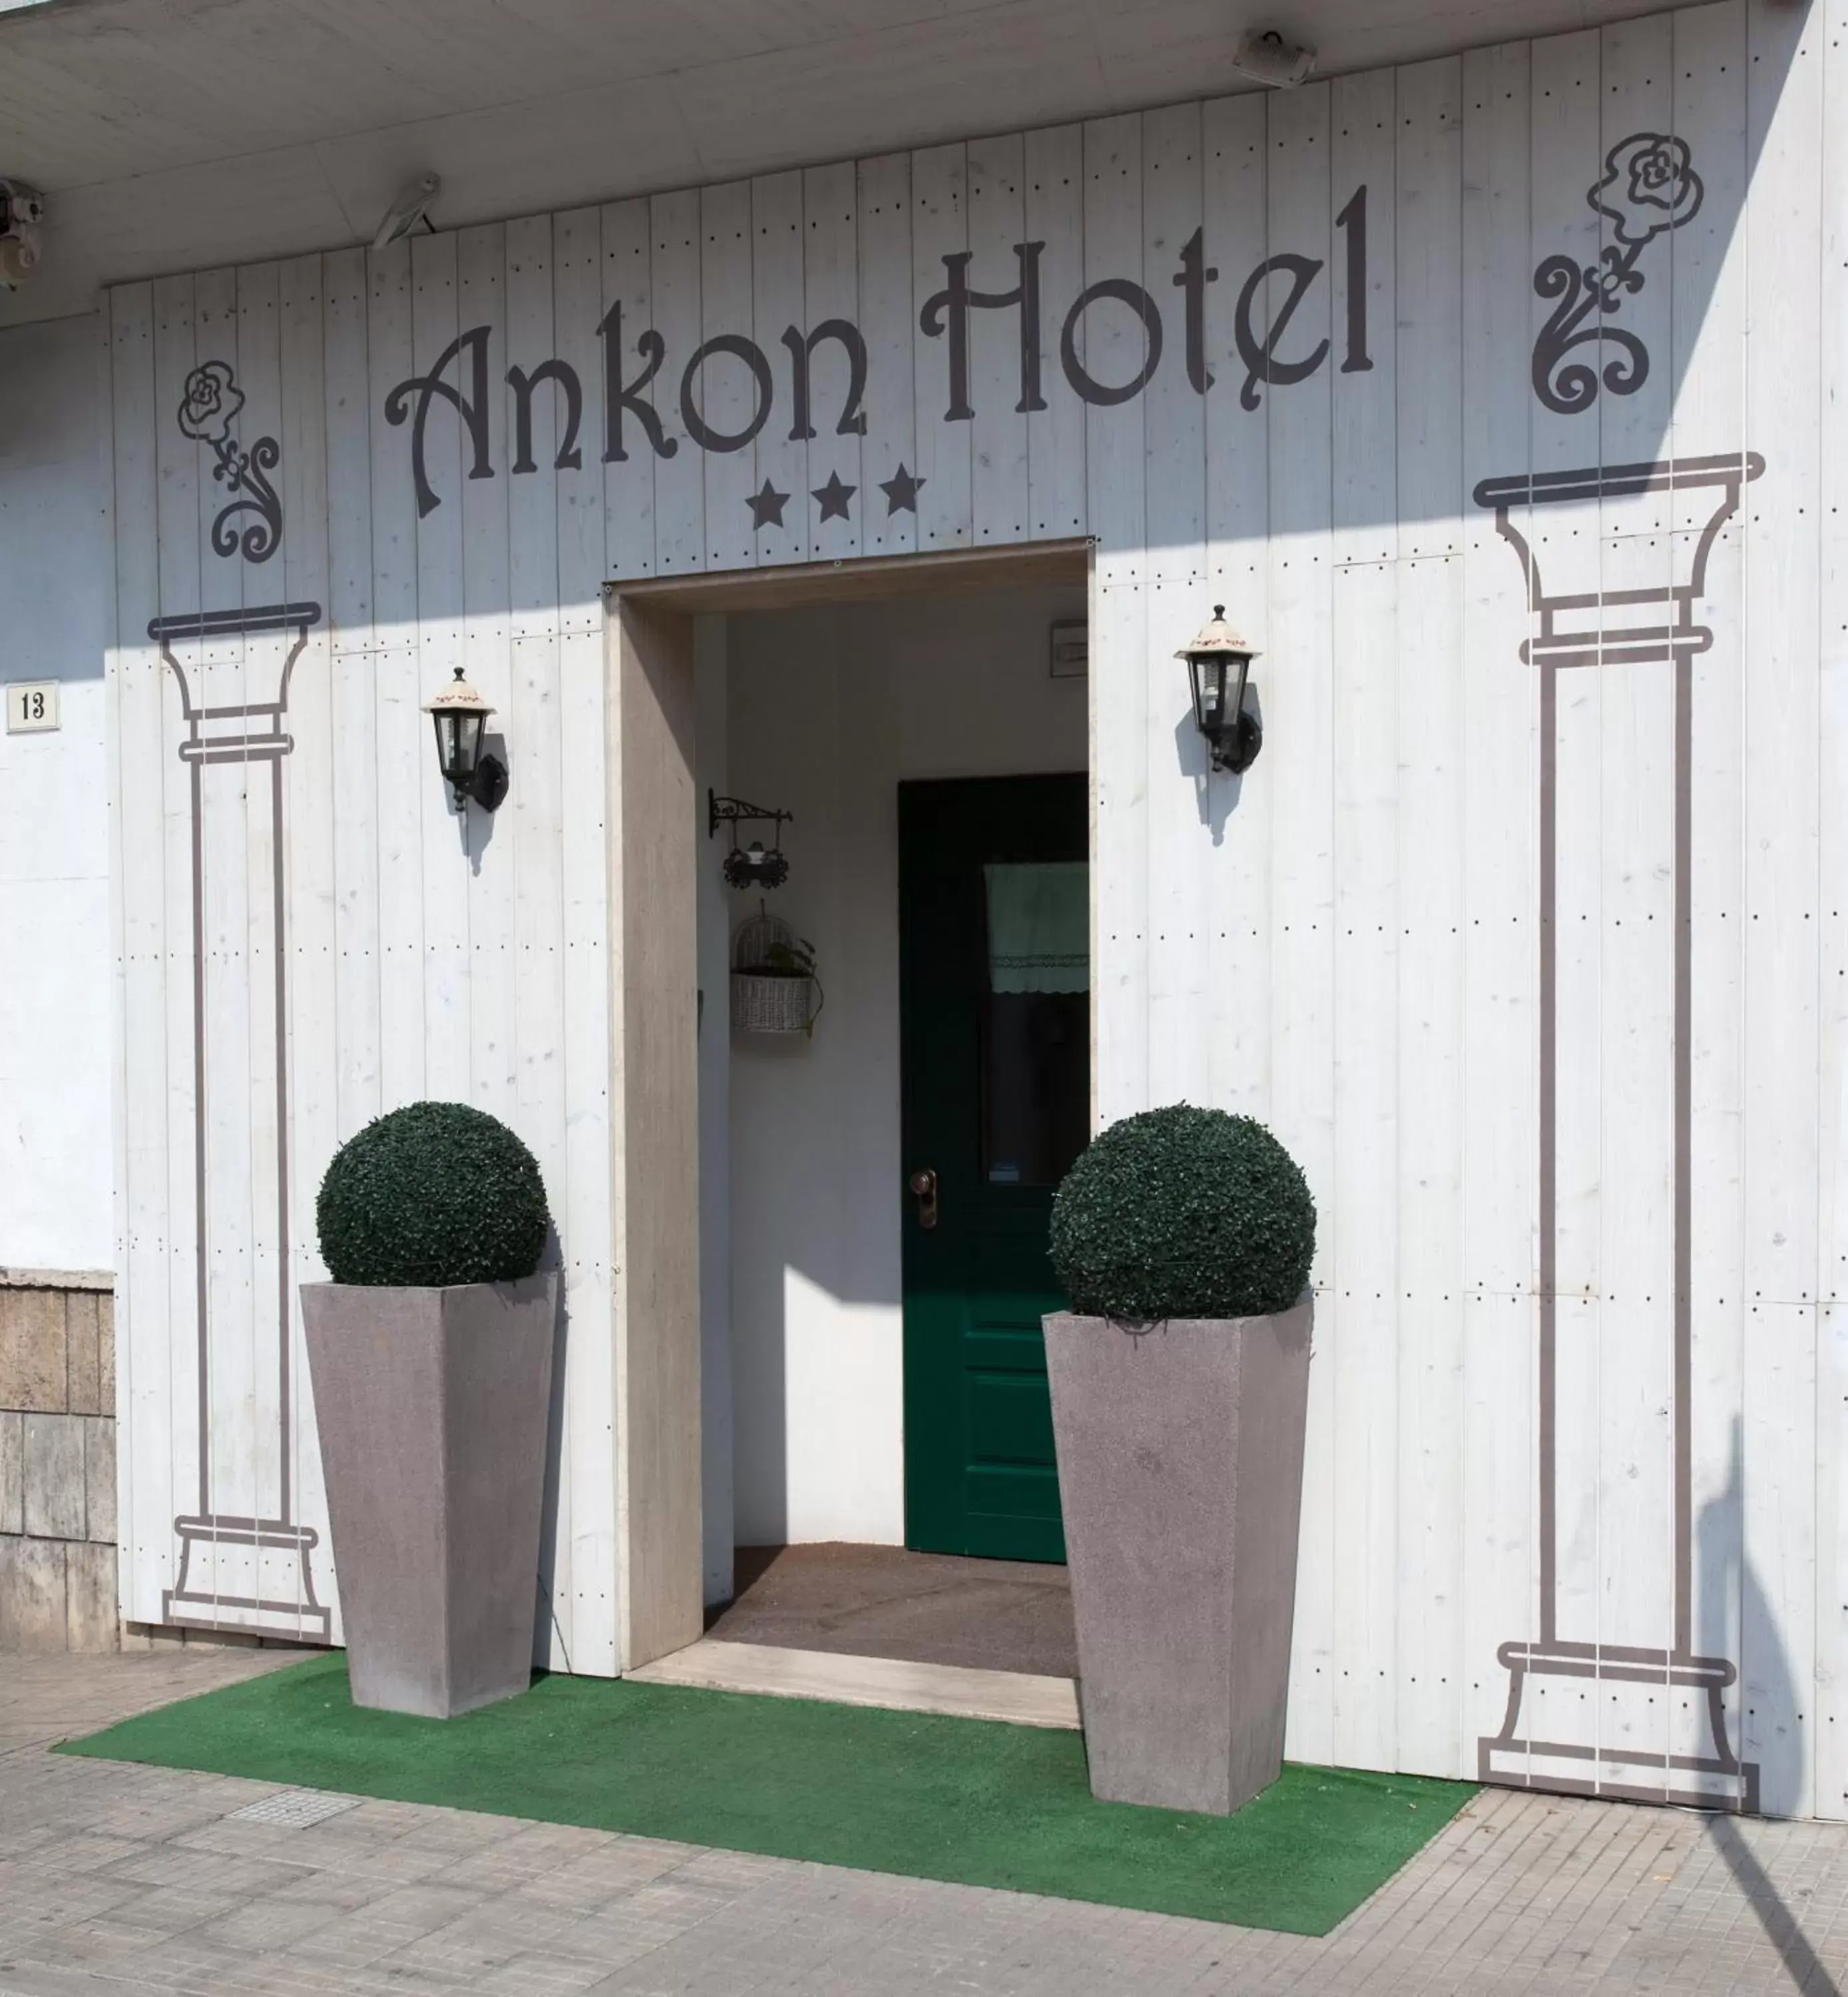 Facade/entrance in Ankon Hotel